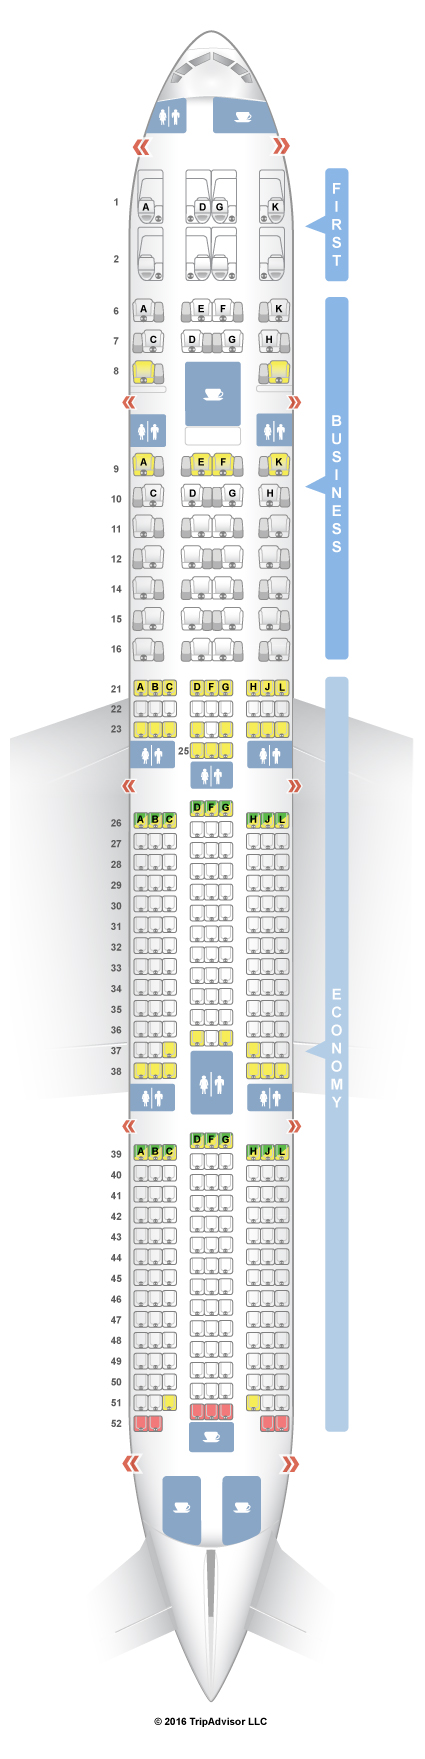 Denah Tempat Duduk Pesawat Garuda Boeing 737 800 - Sederet Tempat